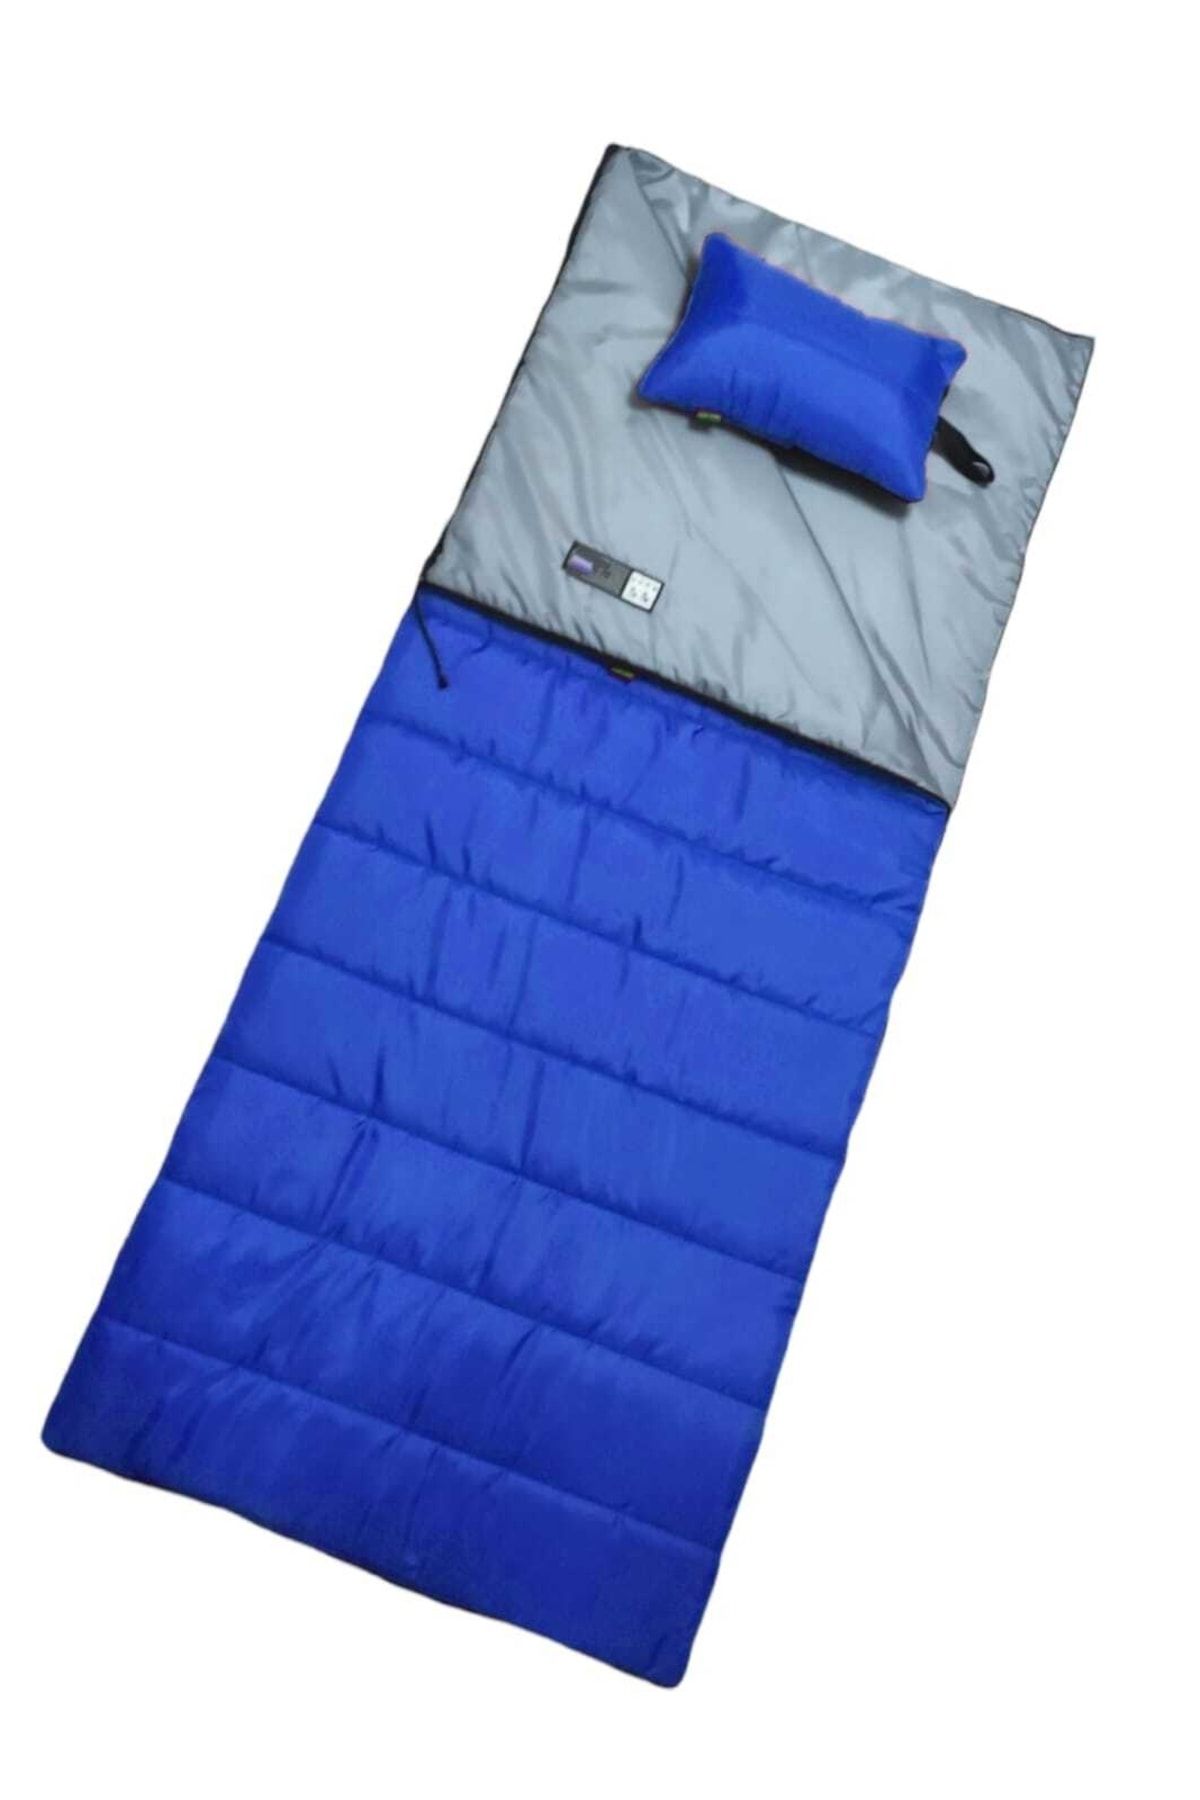 CAMP STORY Tim-8 200 Gr Yastıklı Battaniye Tipi Uyku Tulumu Mavi